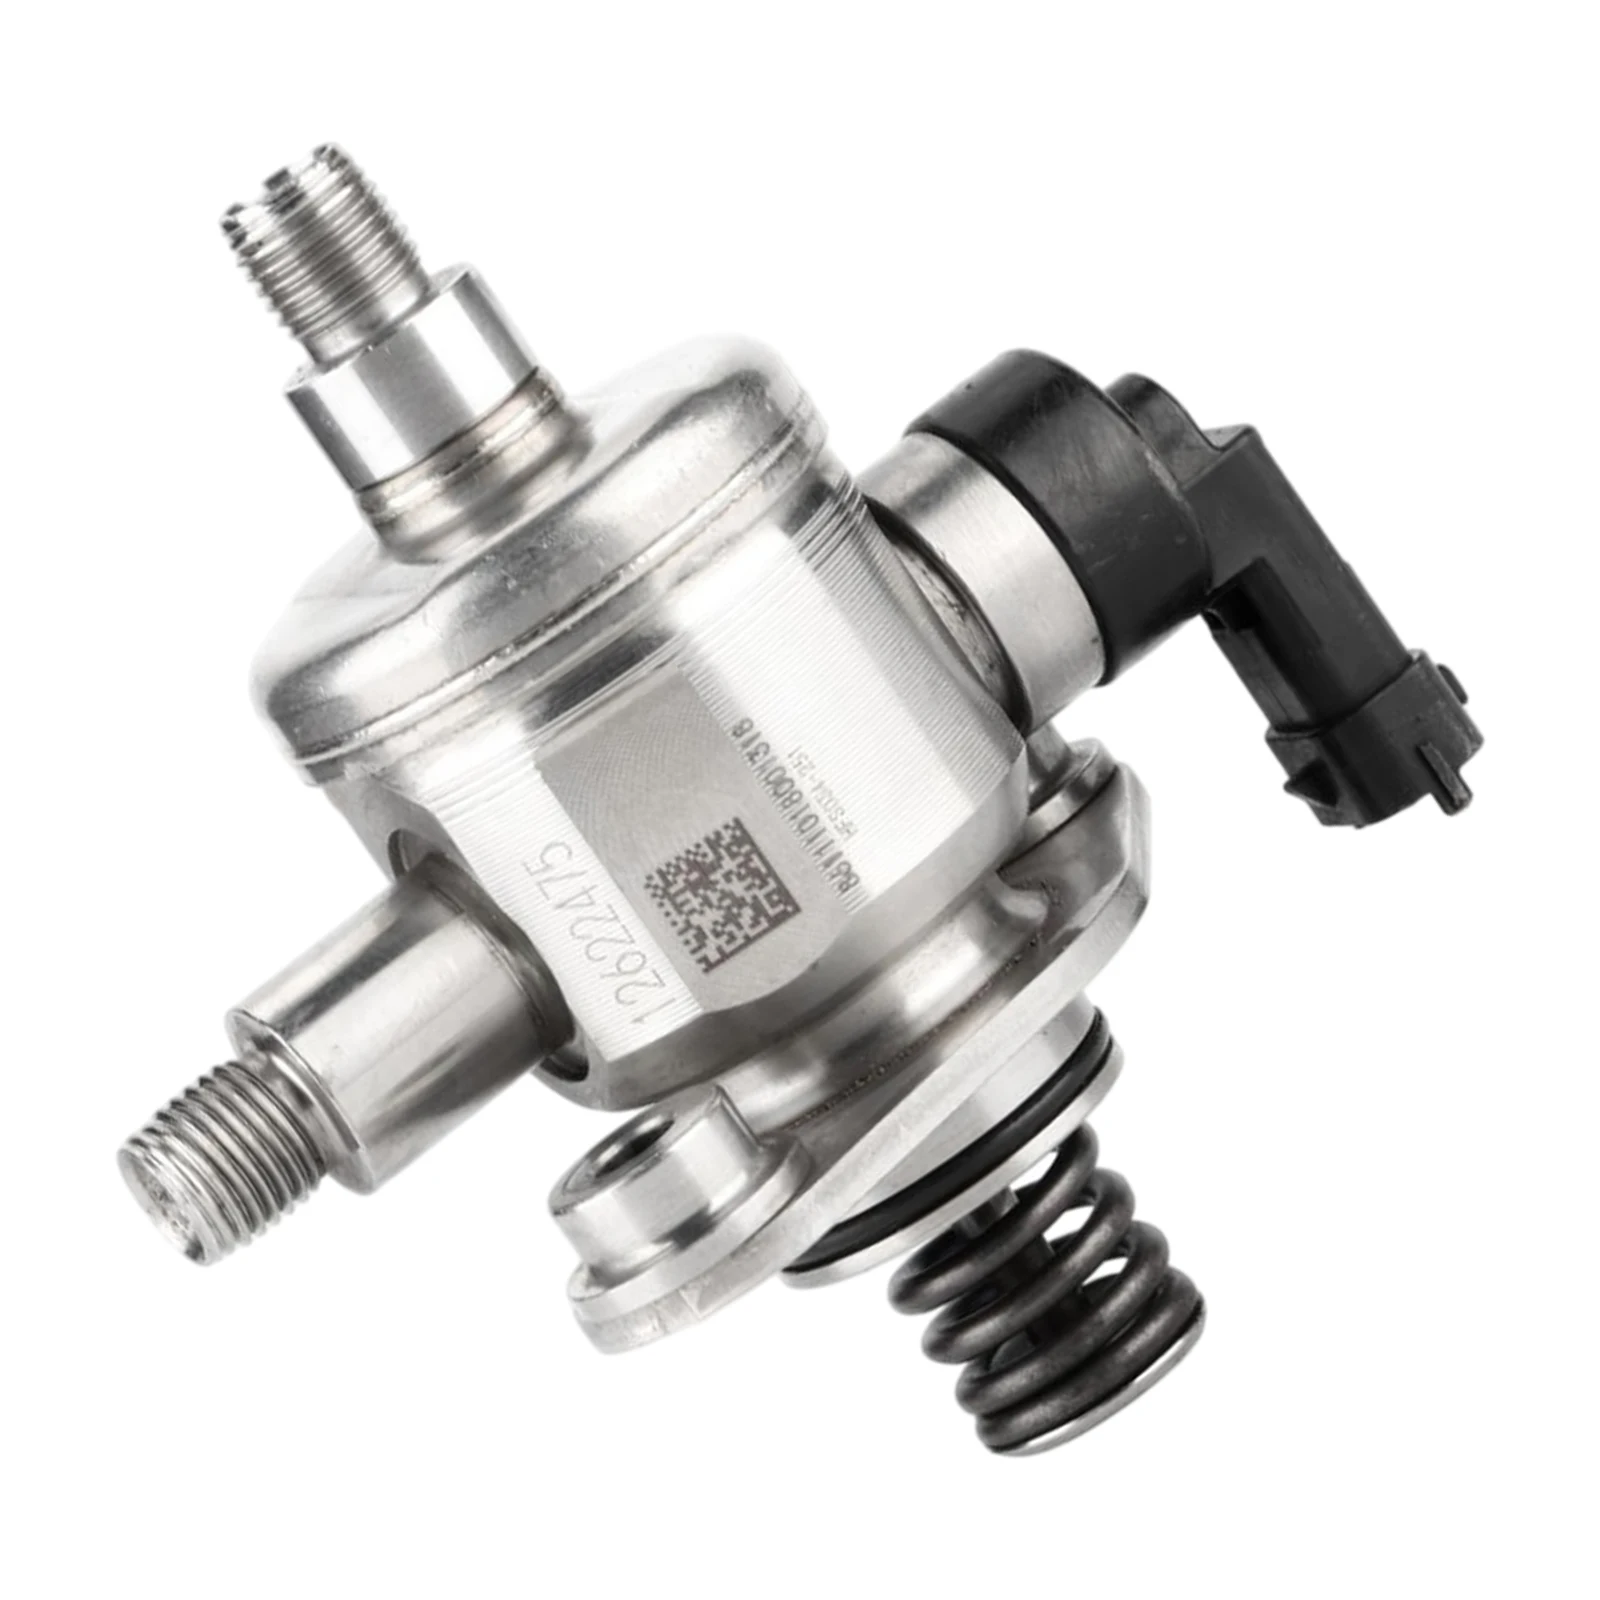 New Car High Pressure Fuel Pump Replacement 12622475 12677329 for Cadillac CTS ATS XTS SRX